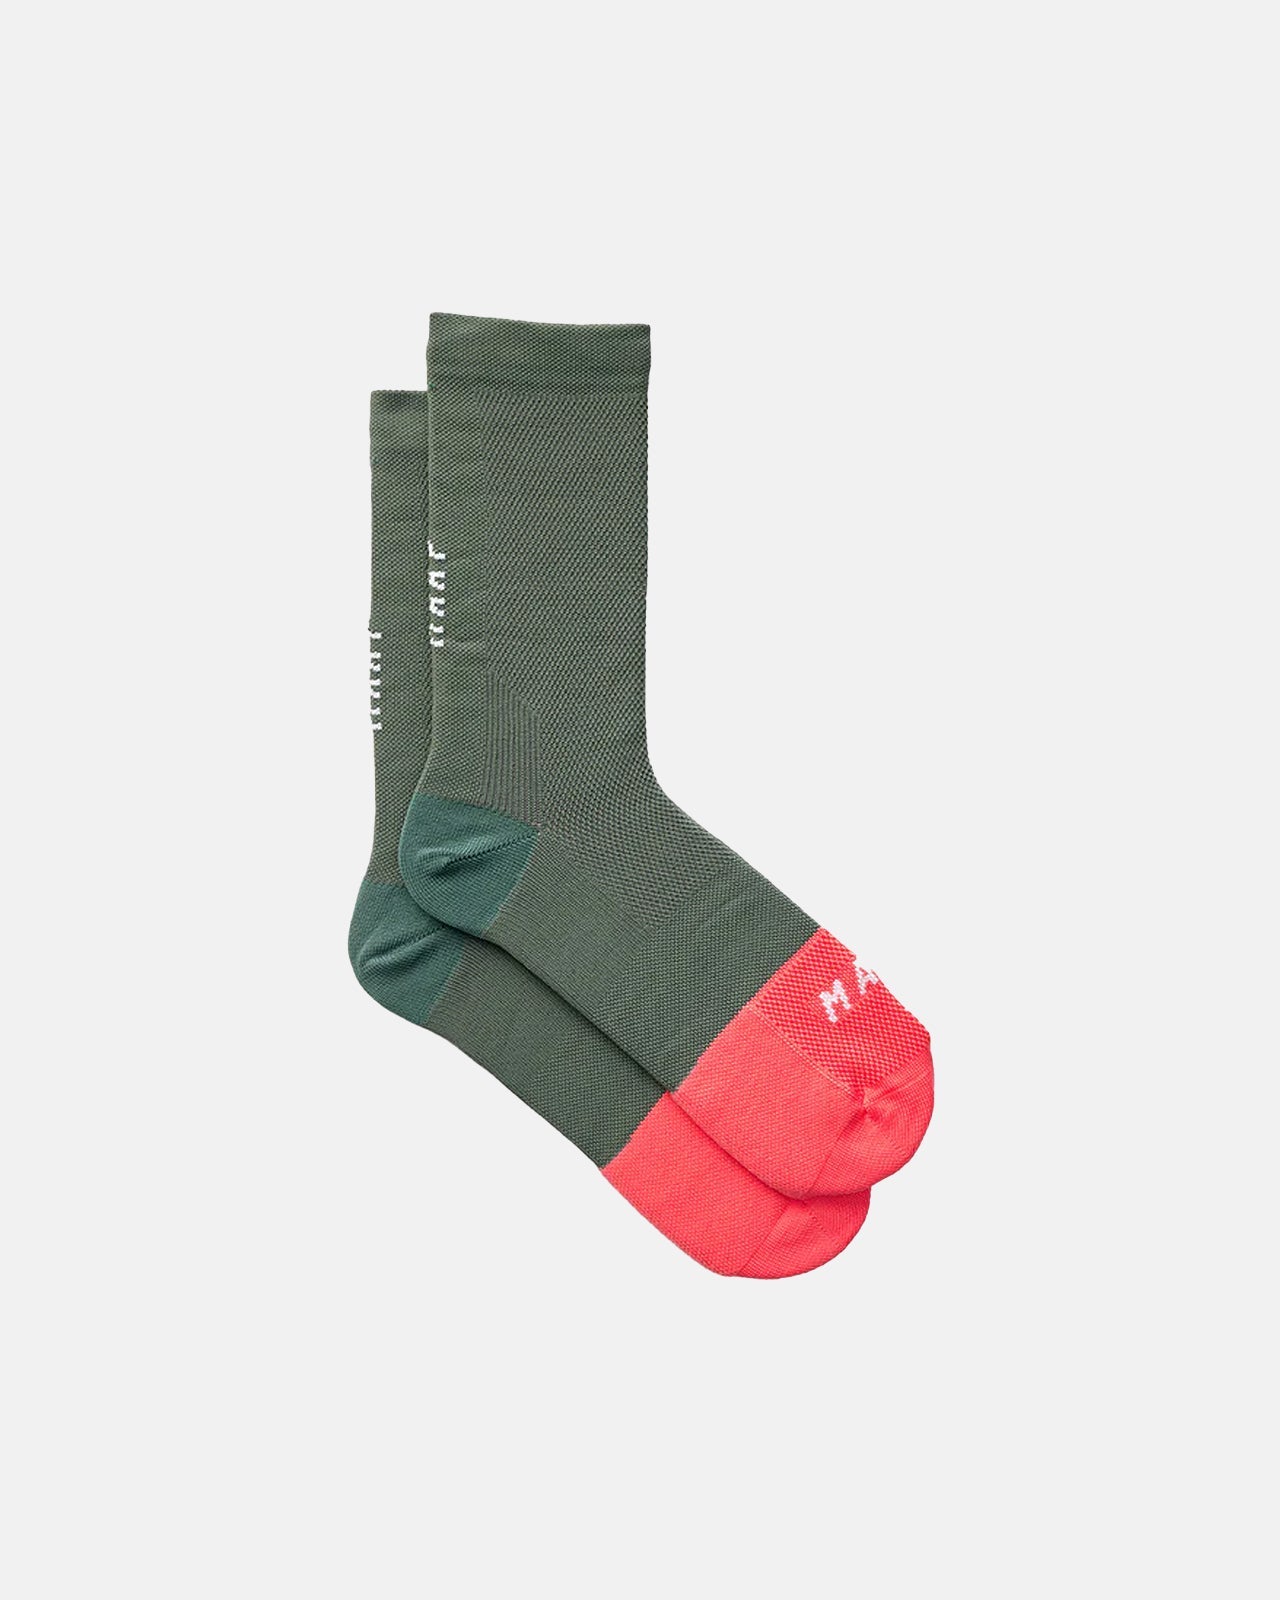 Division Sock - Artichoke - MAAP